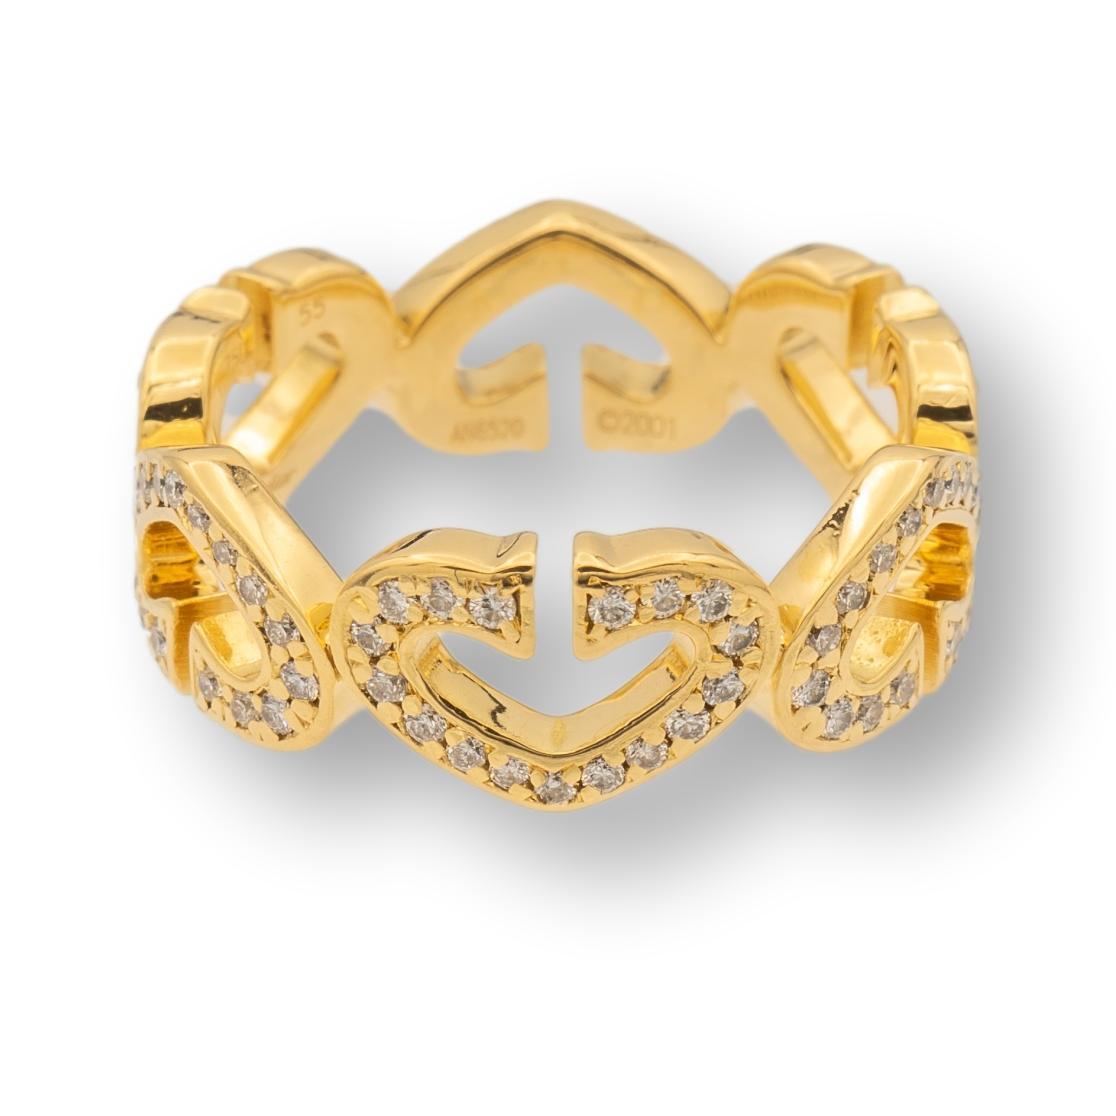 Contemporary Cartier C Hearts Diamond Ring 18K Yellow Gold Vintage, Circa 2001